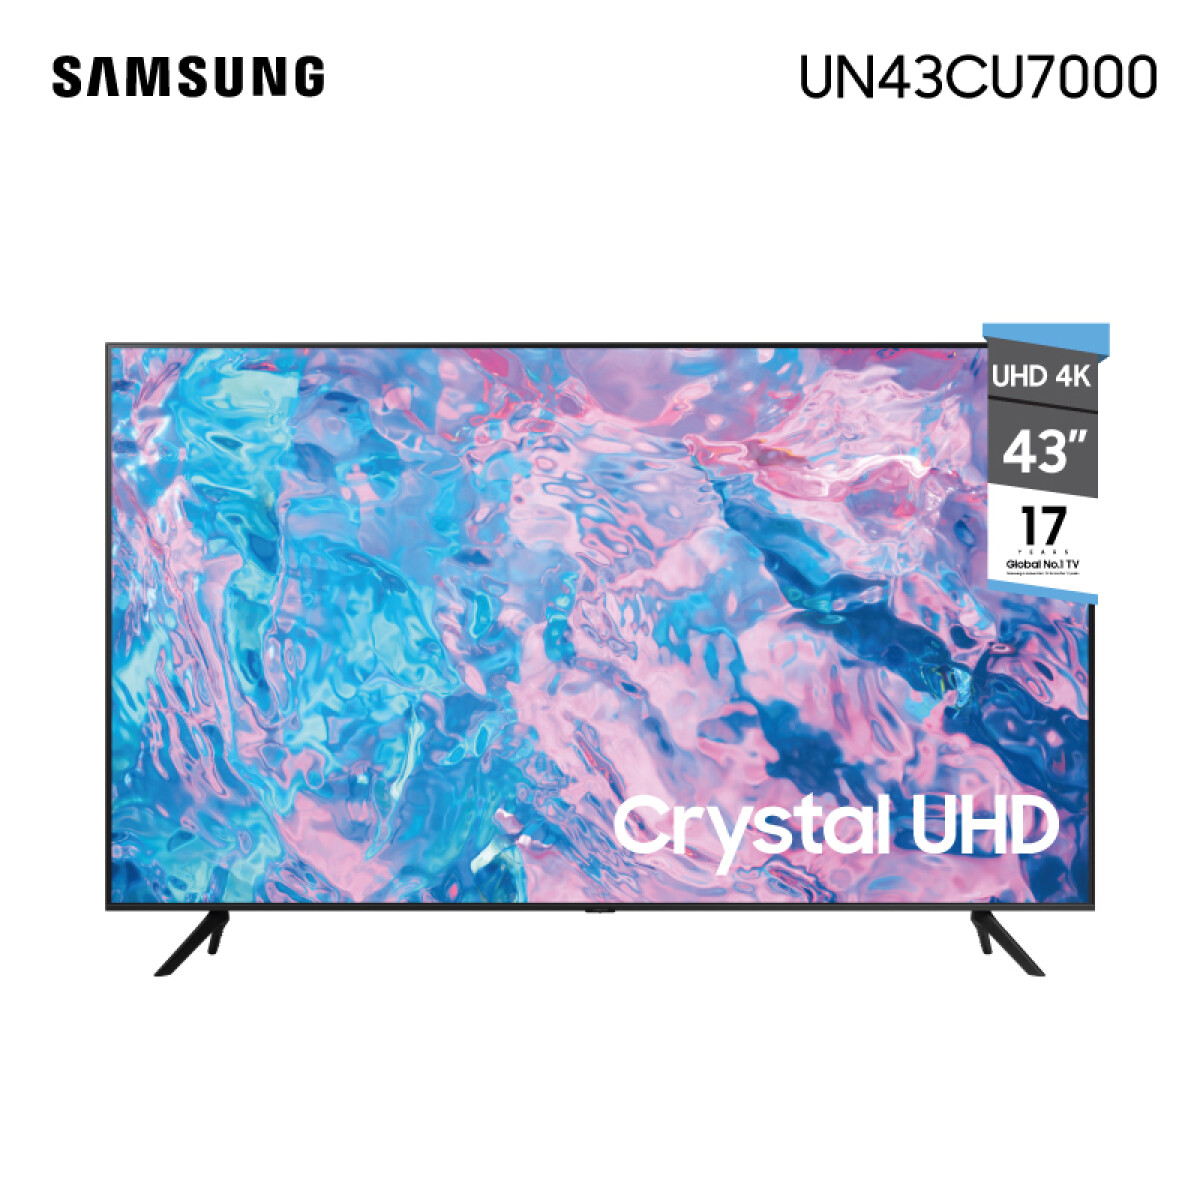 Led Smart Tv 43 Uhd 4K Samsung UN43CU7000 - 001 